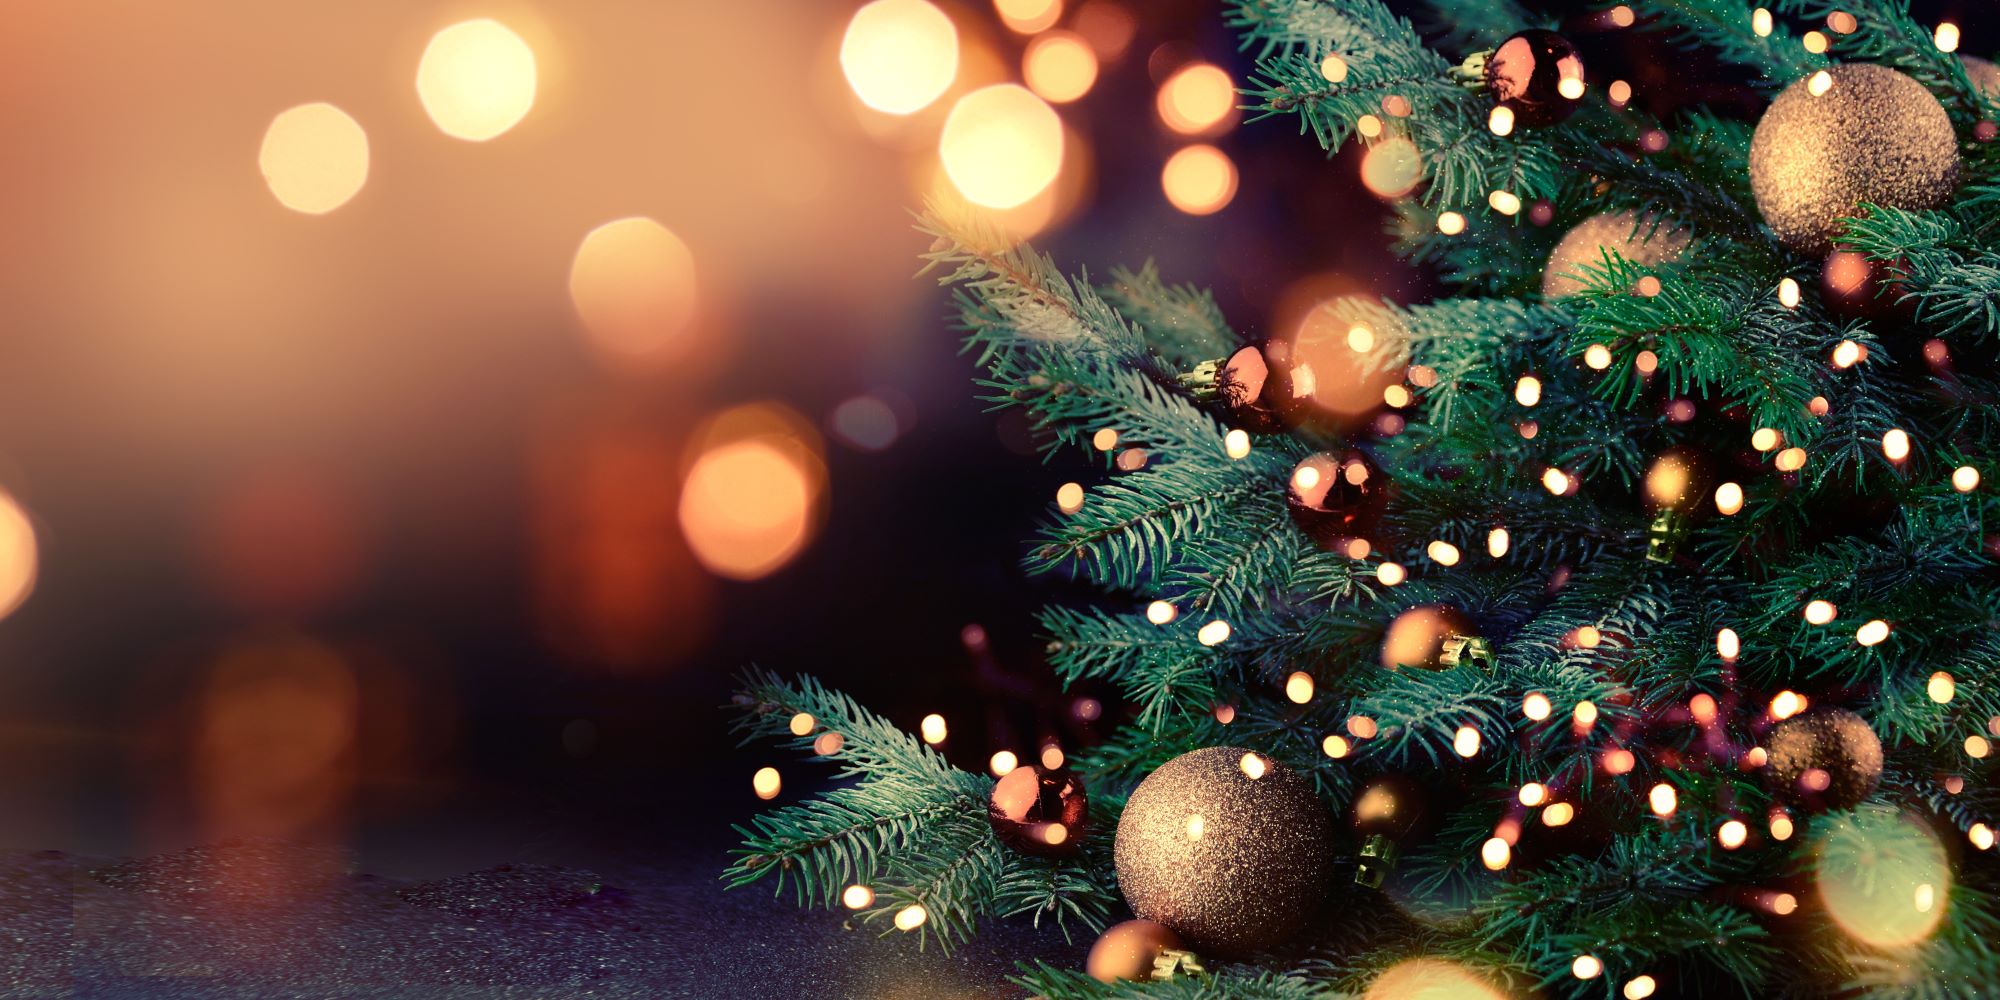 Árbol de navidad, con esferas y luces. De fondo, luces difuminadas.